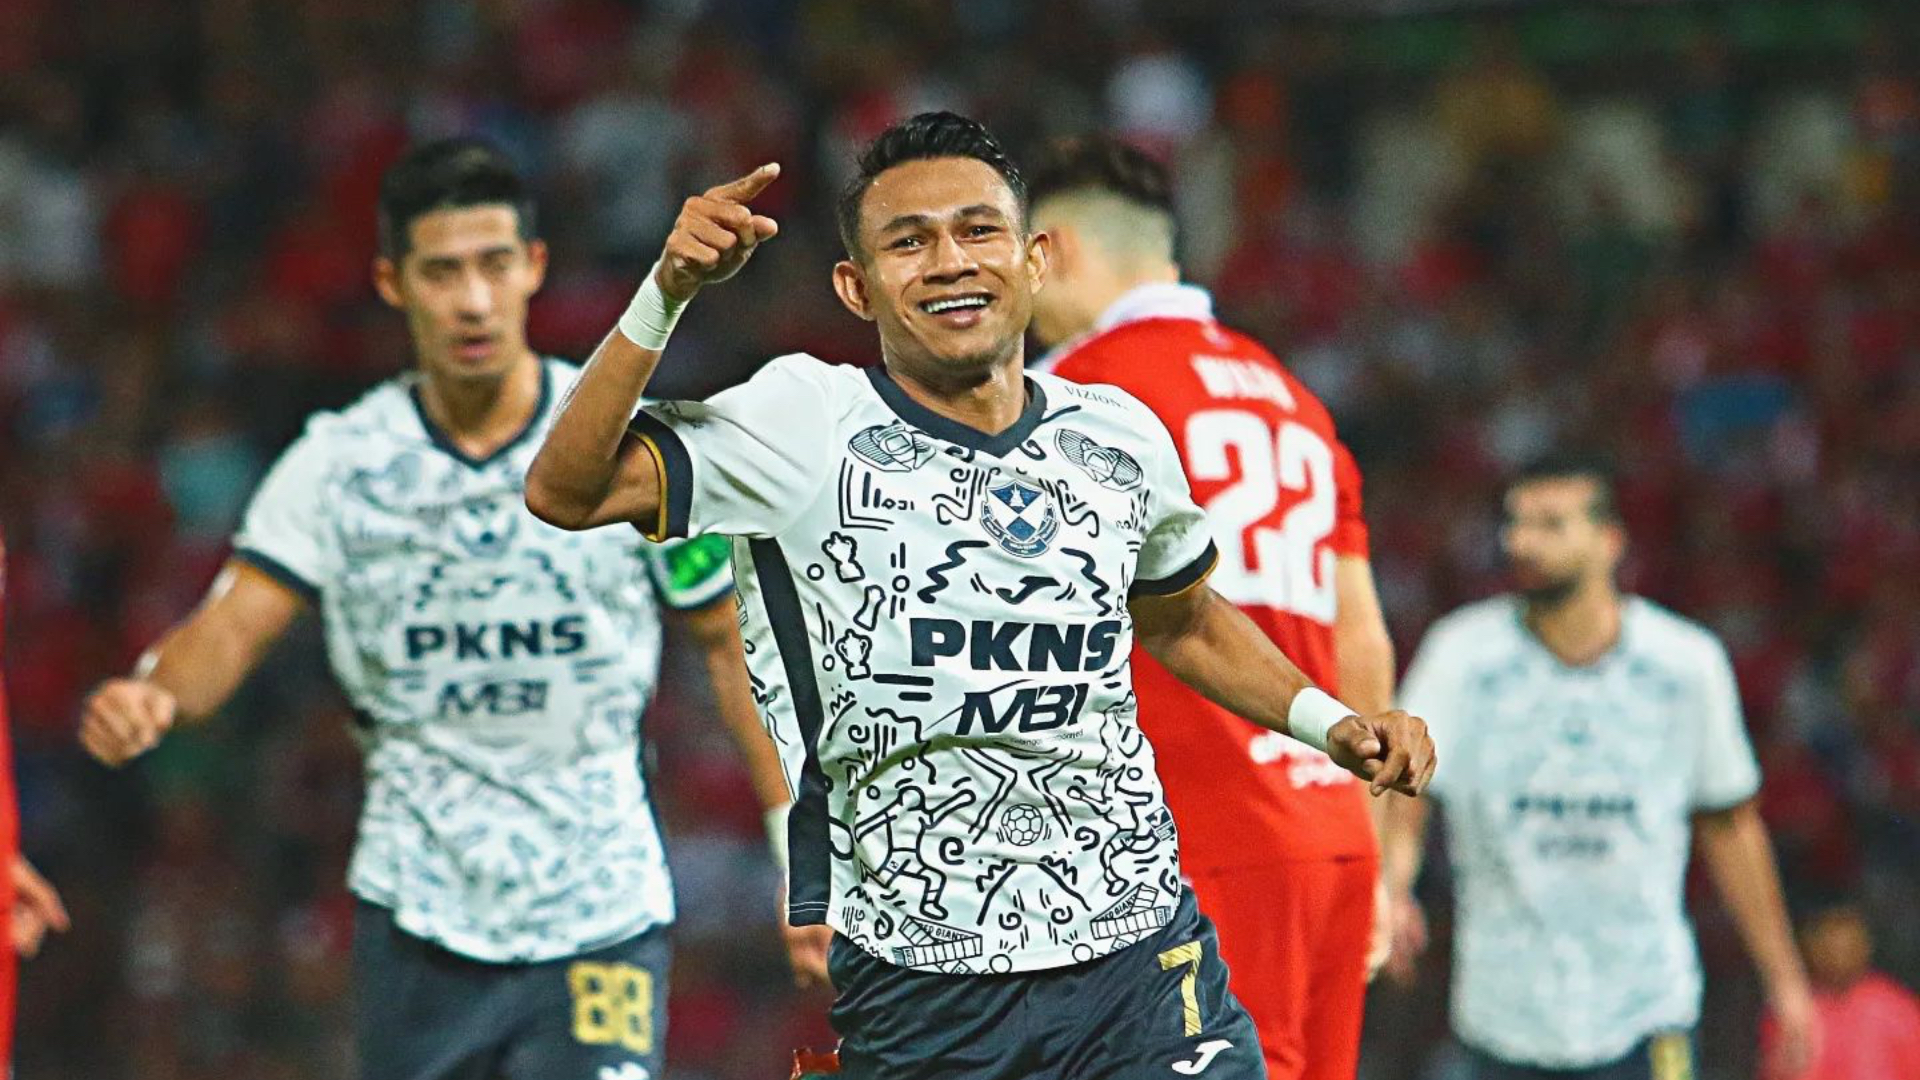 “Ramai Yang Nak Jatuhkan Pasukan Selangor’ – Faisal Halim